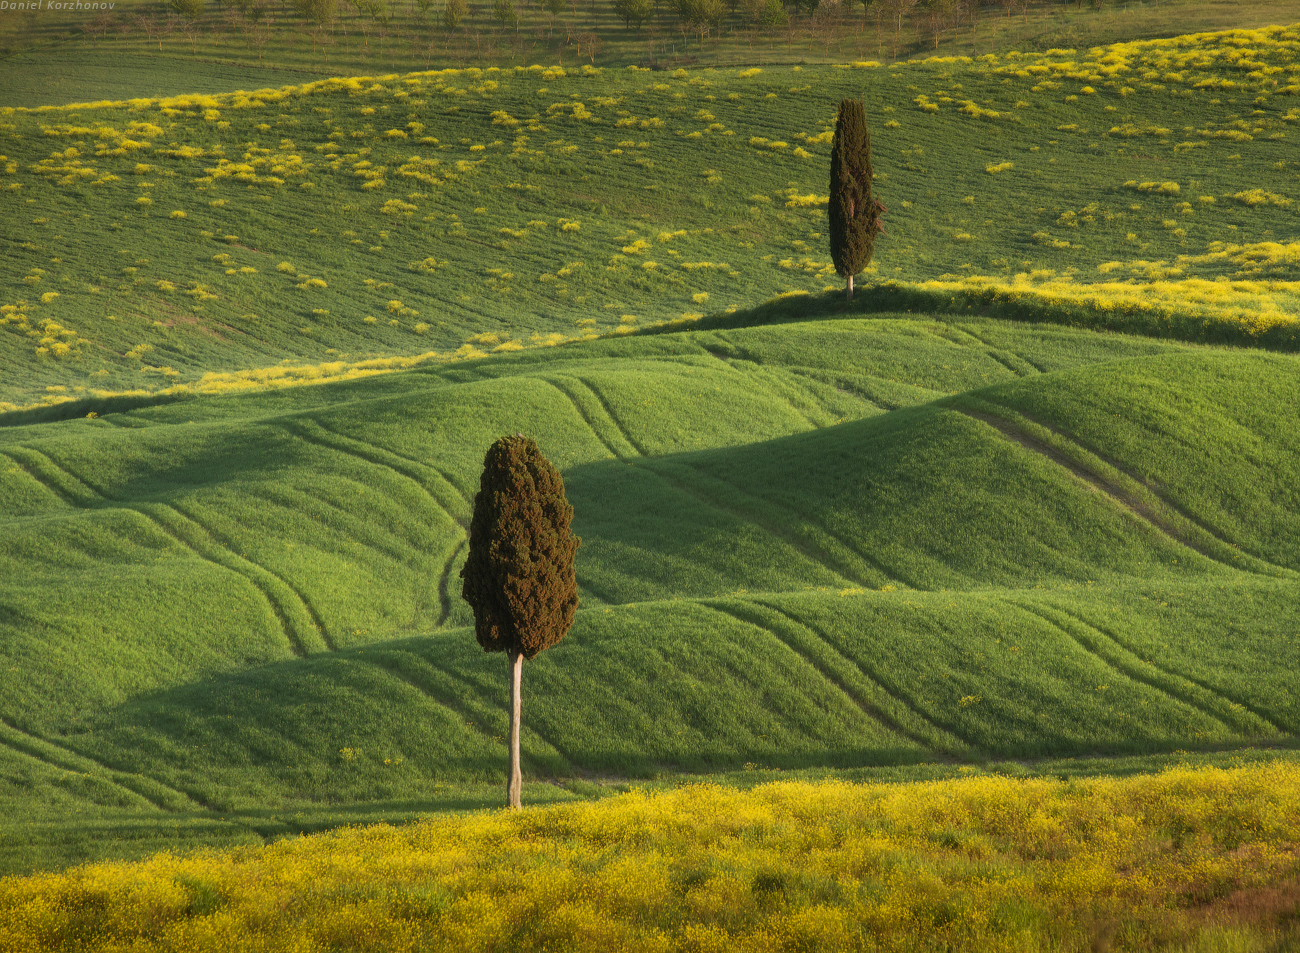 Зеленые поля, вид со стен Пьенцы. Фото Даниила Коржонова